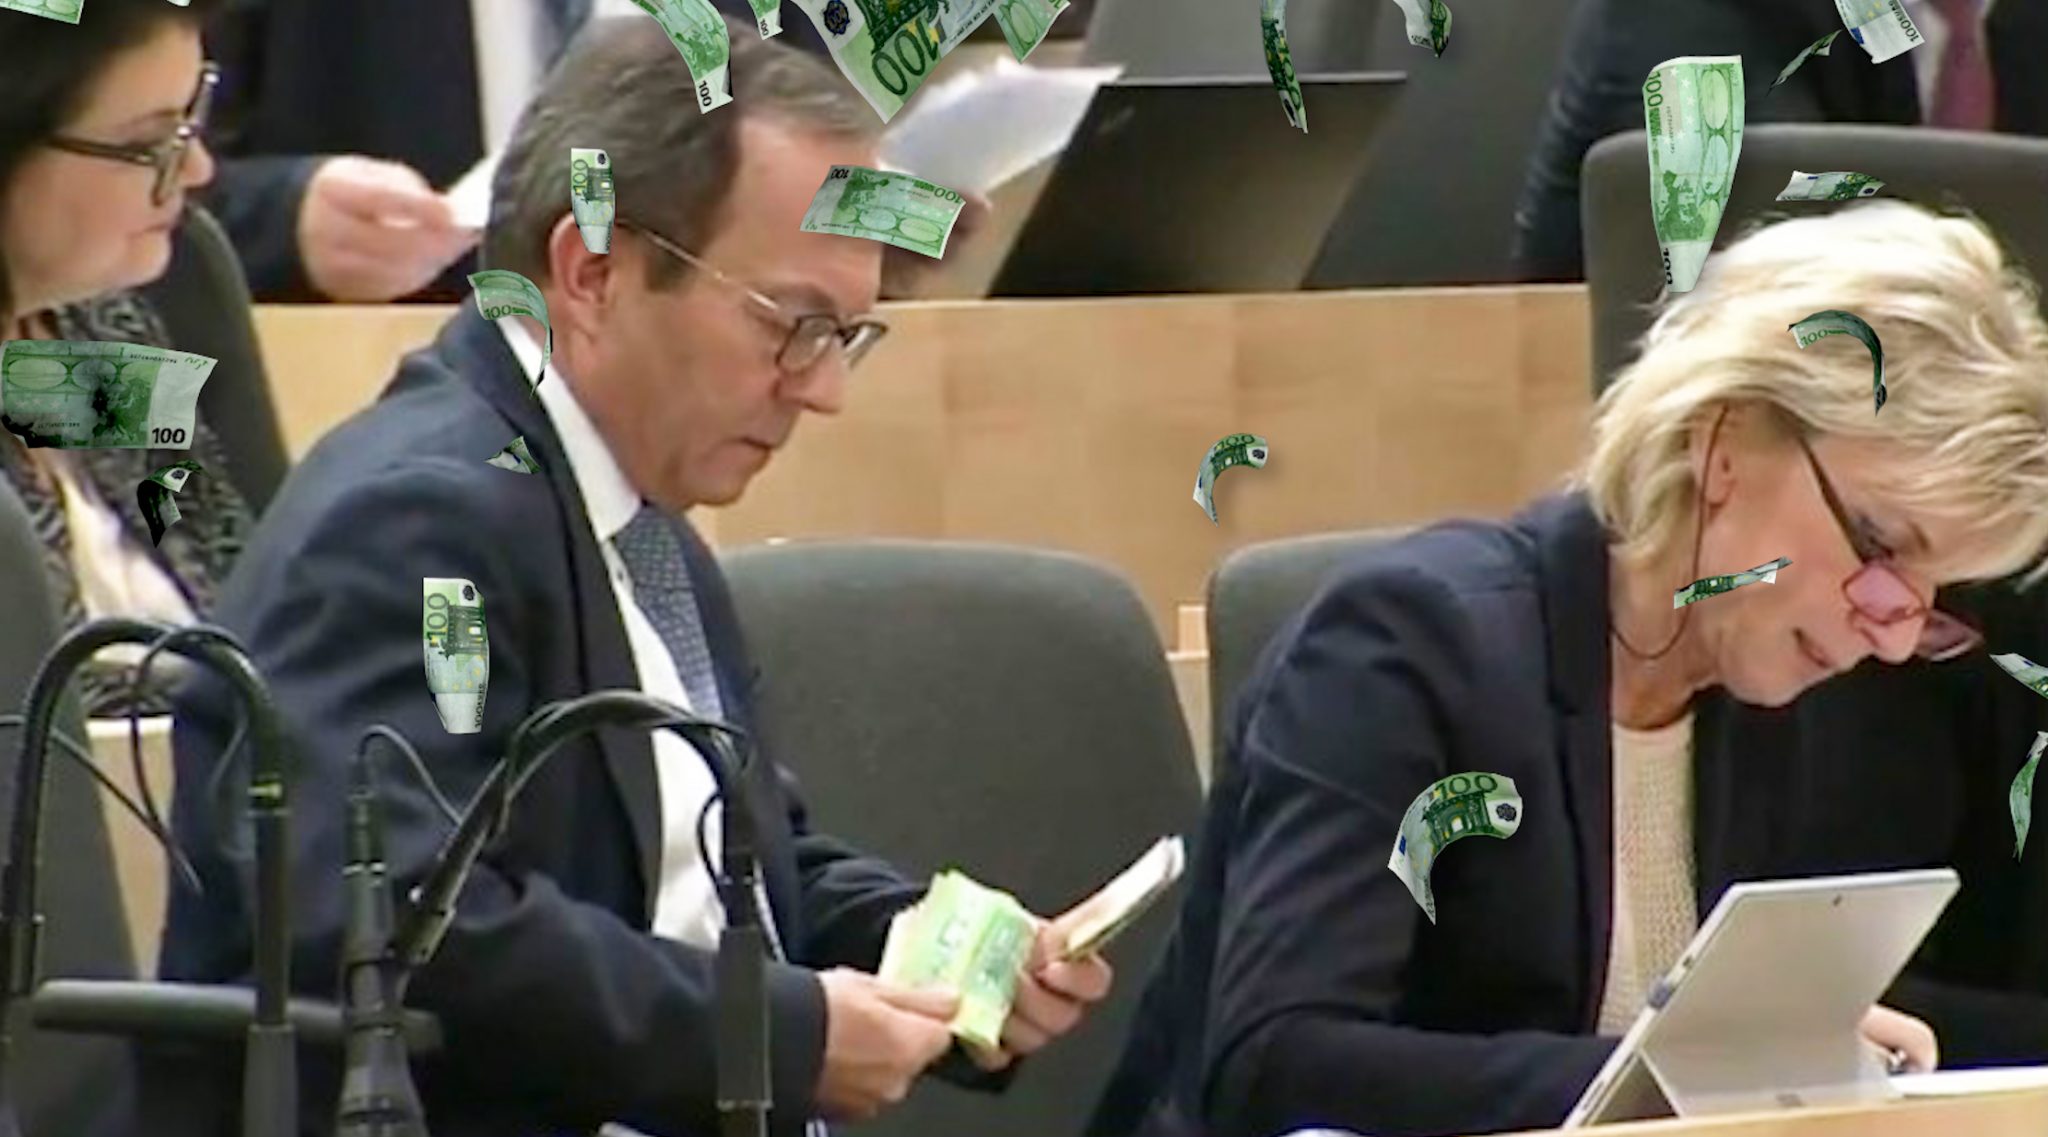 ÖVP-Abgeordneter Haubner zählt ungeniert Geldscheine im Parlament – das Internet lacht